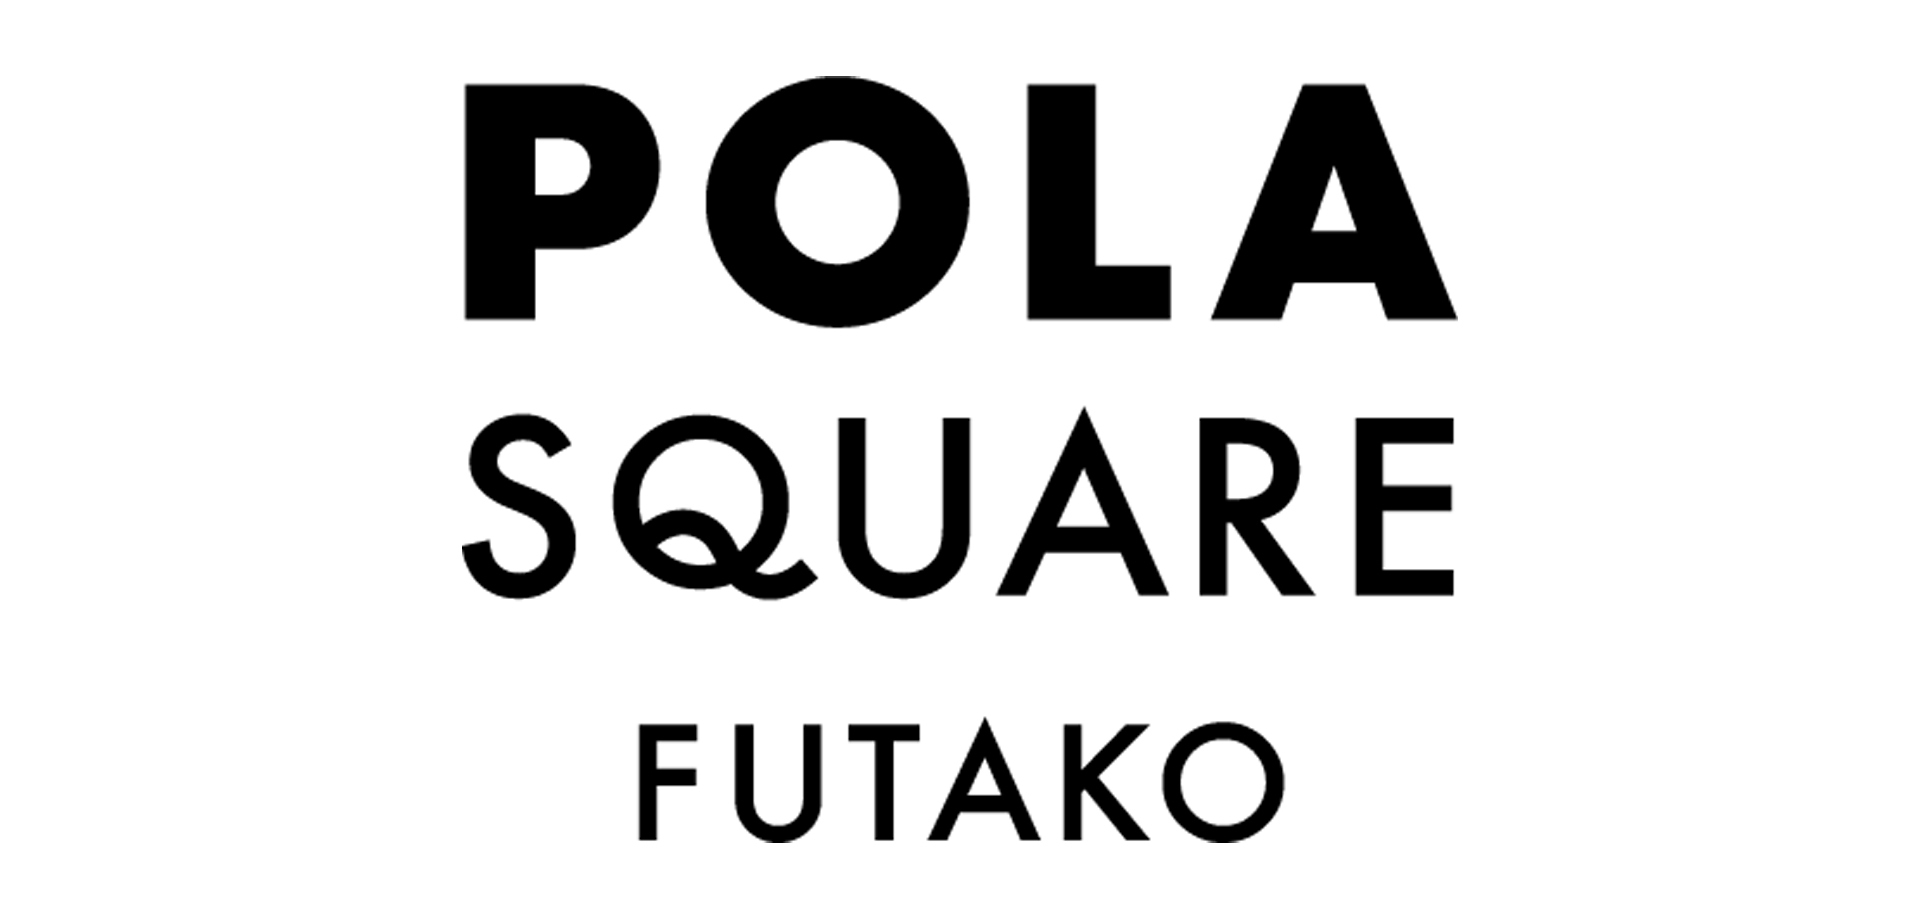 ポーラの体験型店舗「POLA SQUARE FUTAKO」 二子玉川